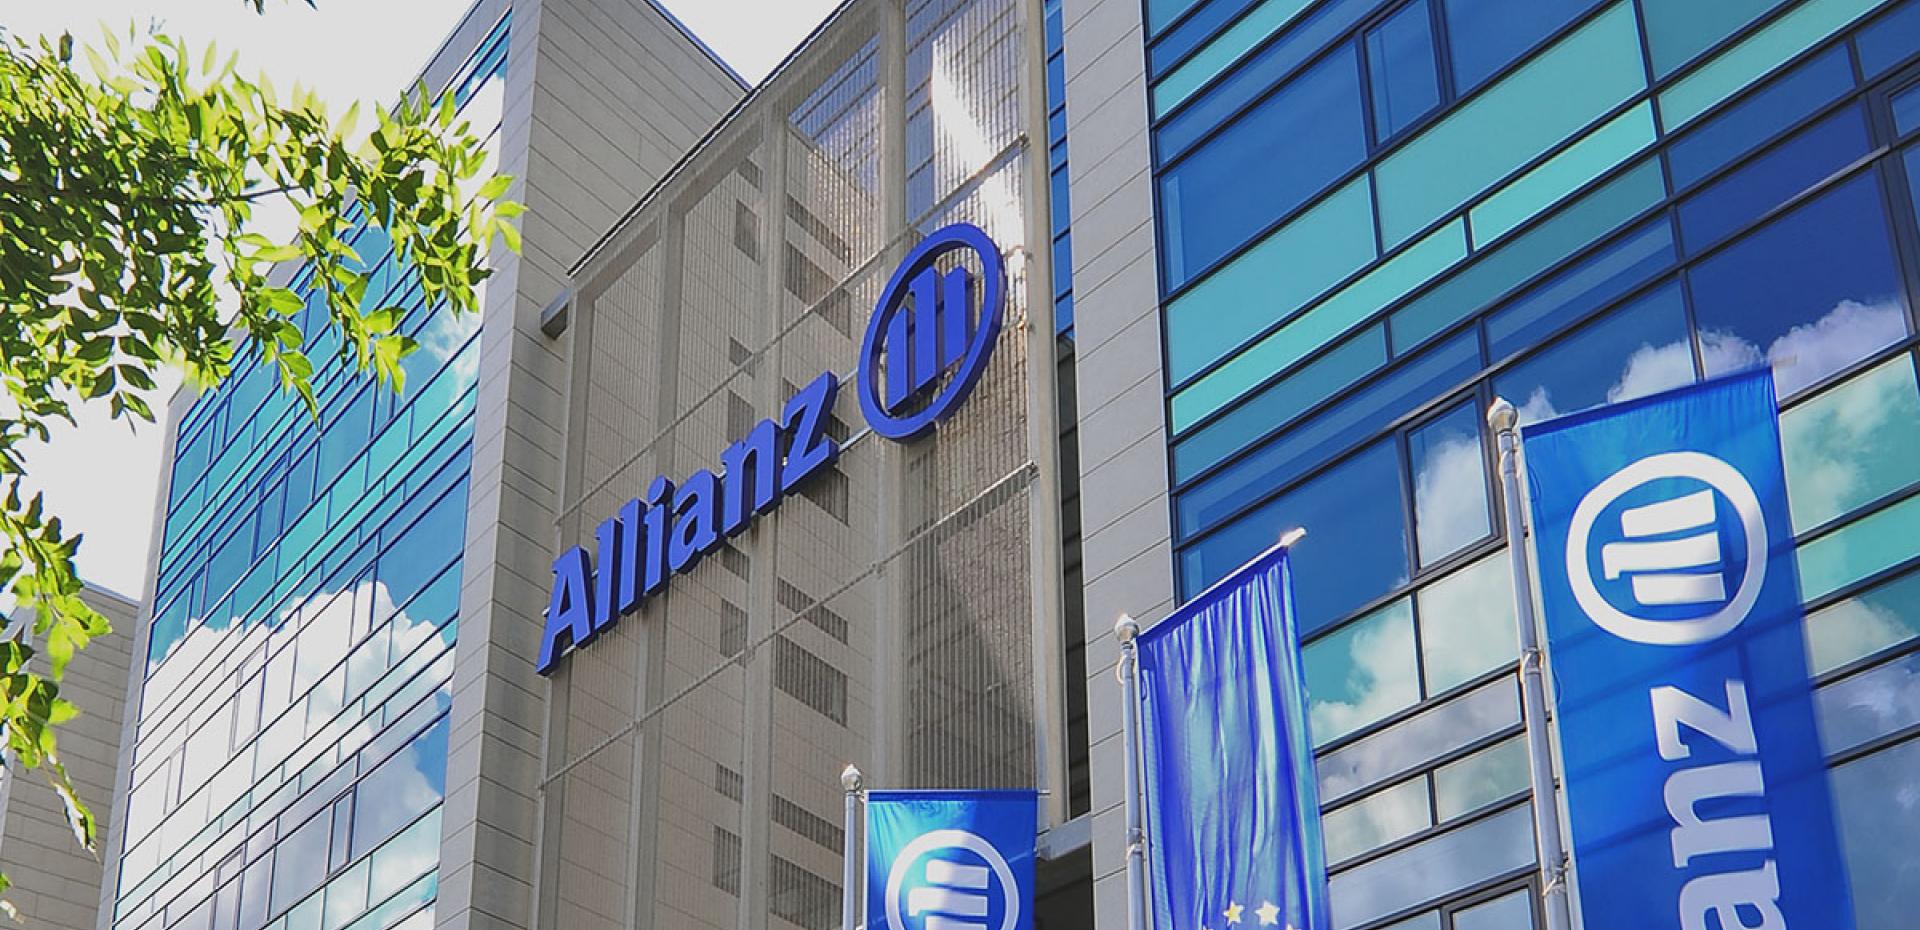 Assicurazione Allianz - Budapest